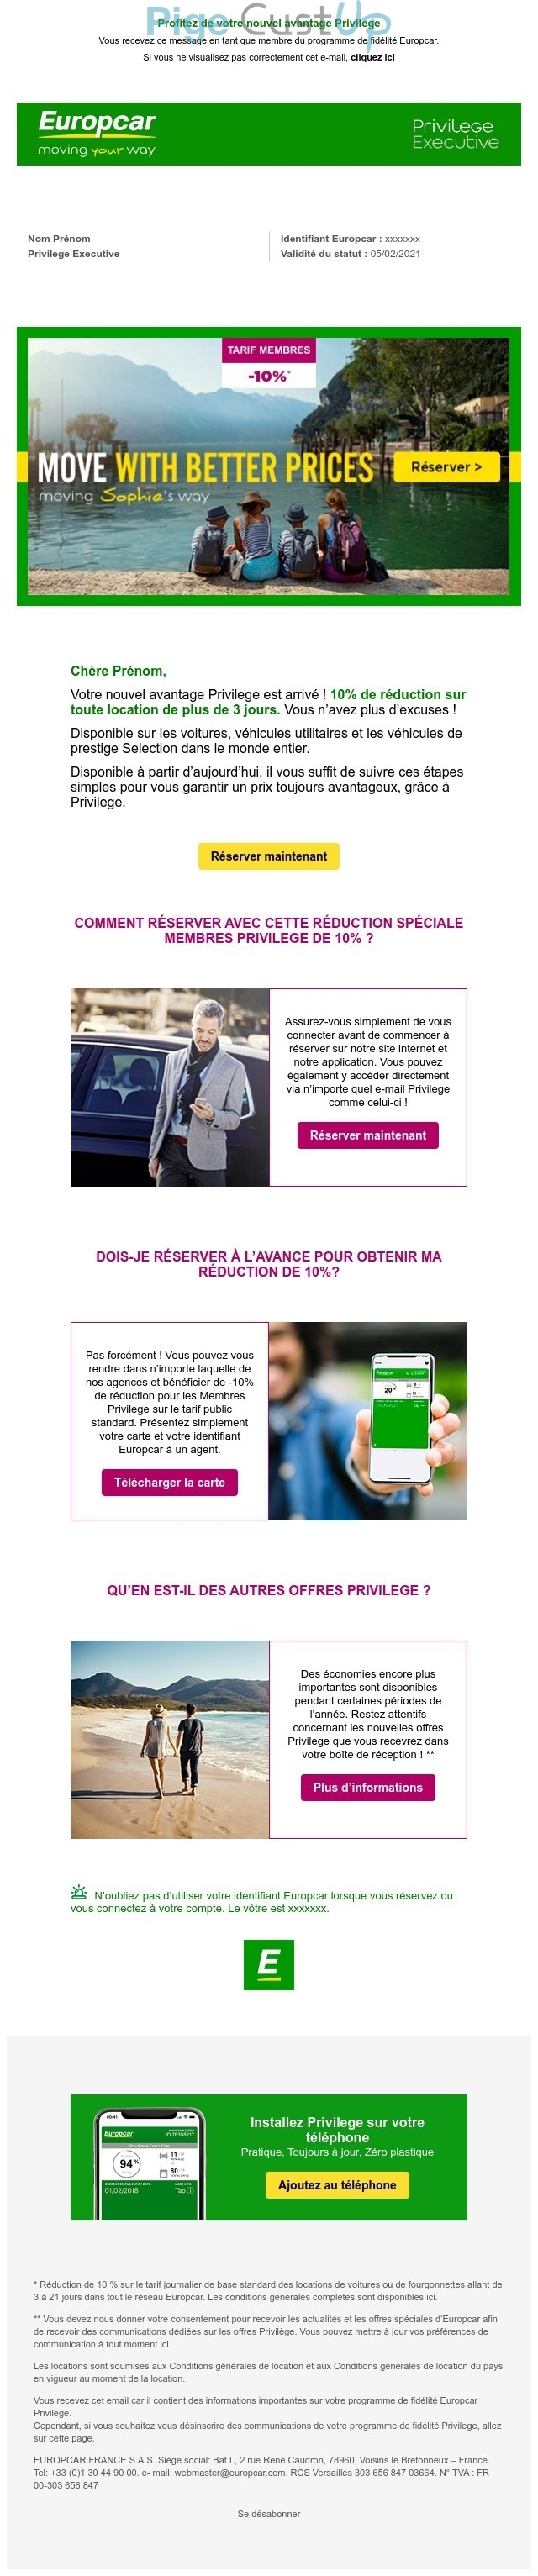 Exemple de Type de media  e-mailing - Europcar - Marketing fidélisation - Animation / Vie du Programme de Fidélité - Incitation au réachat - Marketing Acquisition - Gratuit - Cadeau